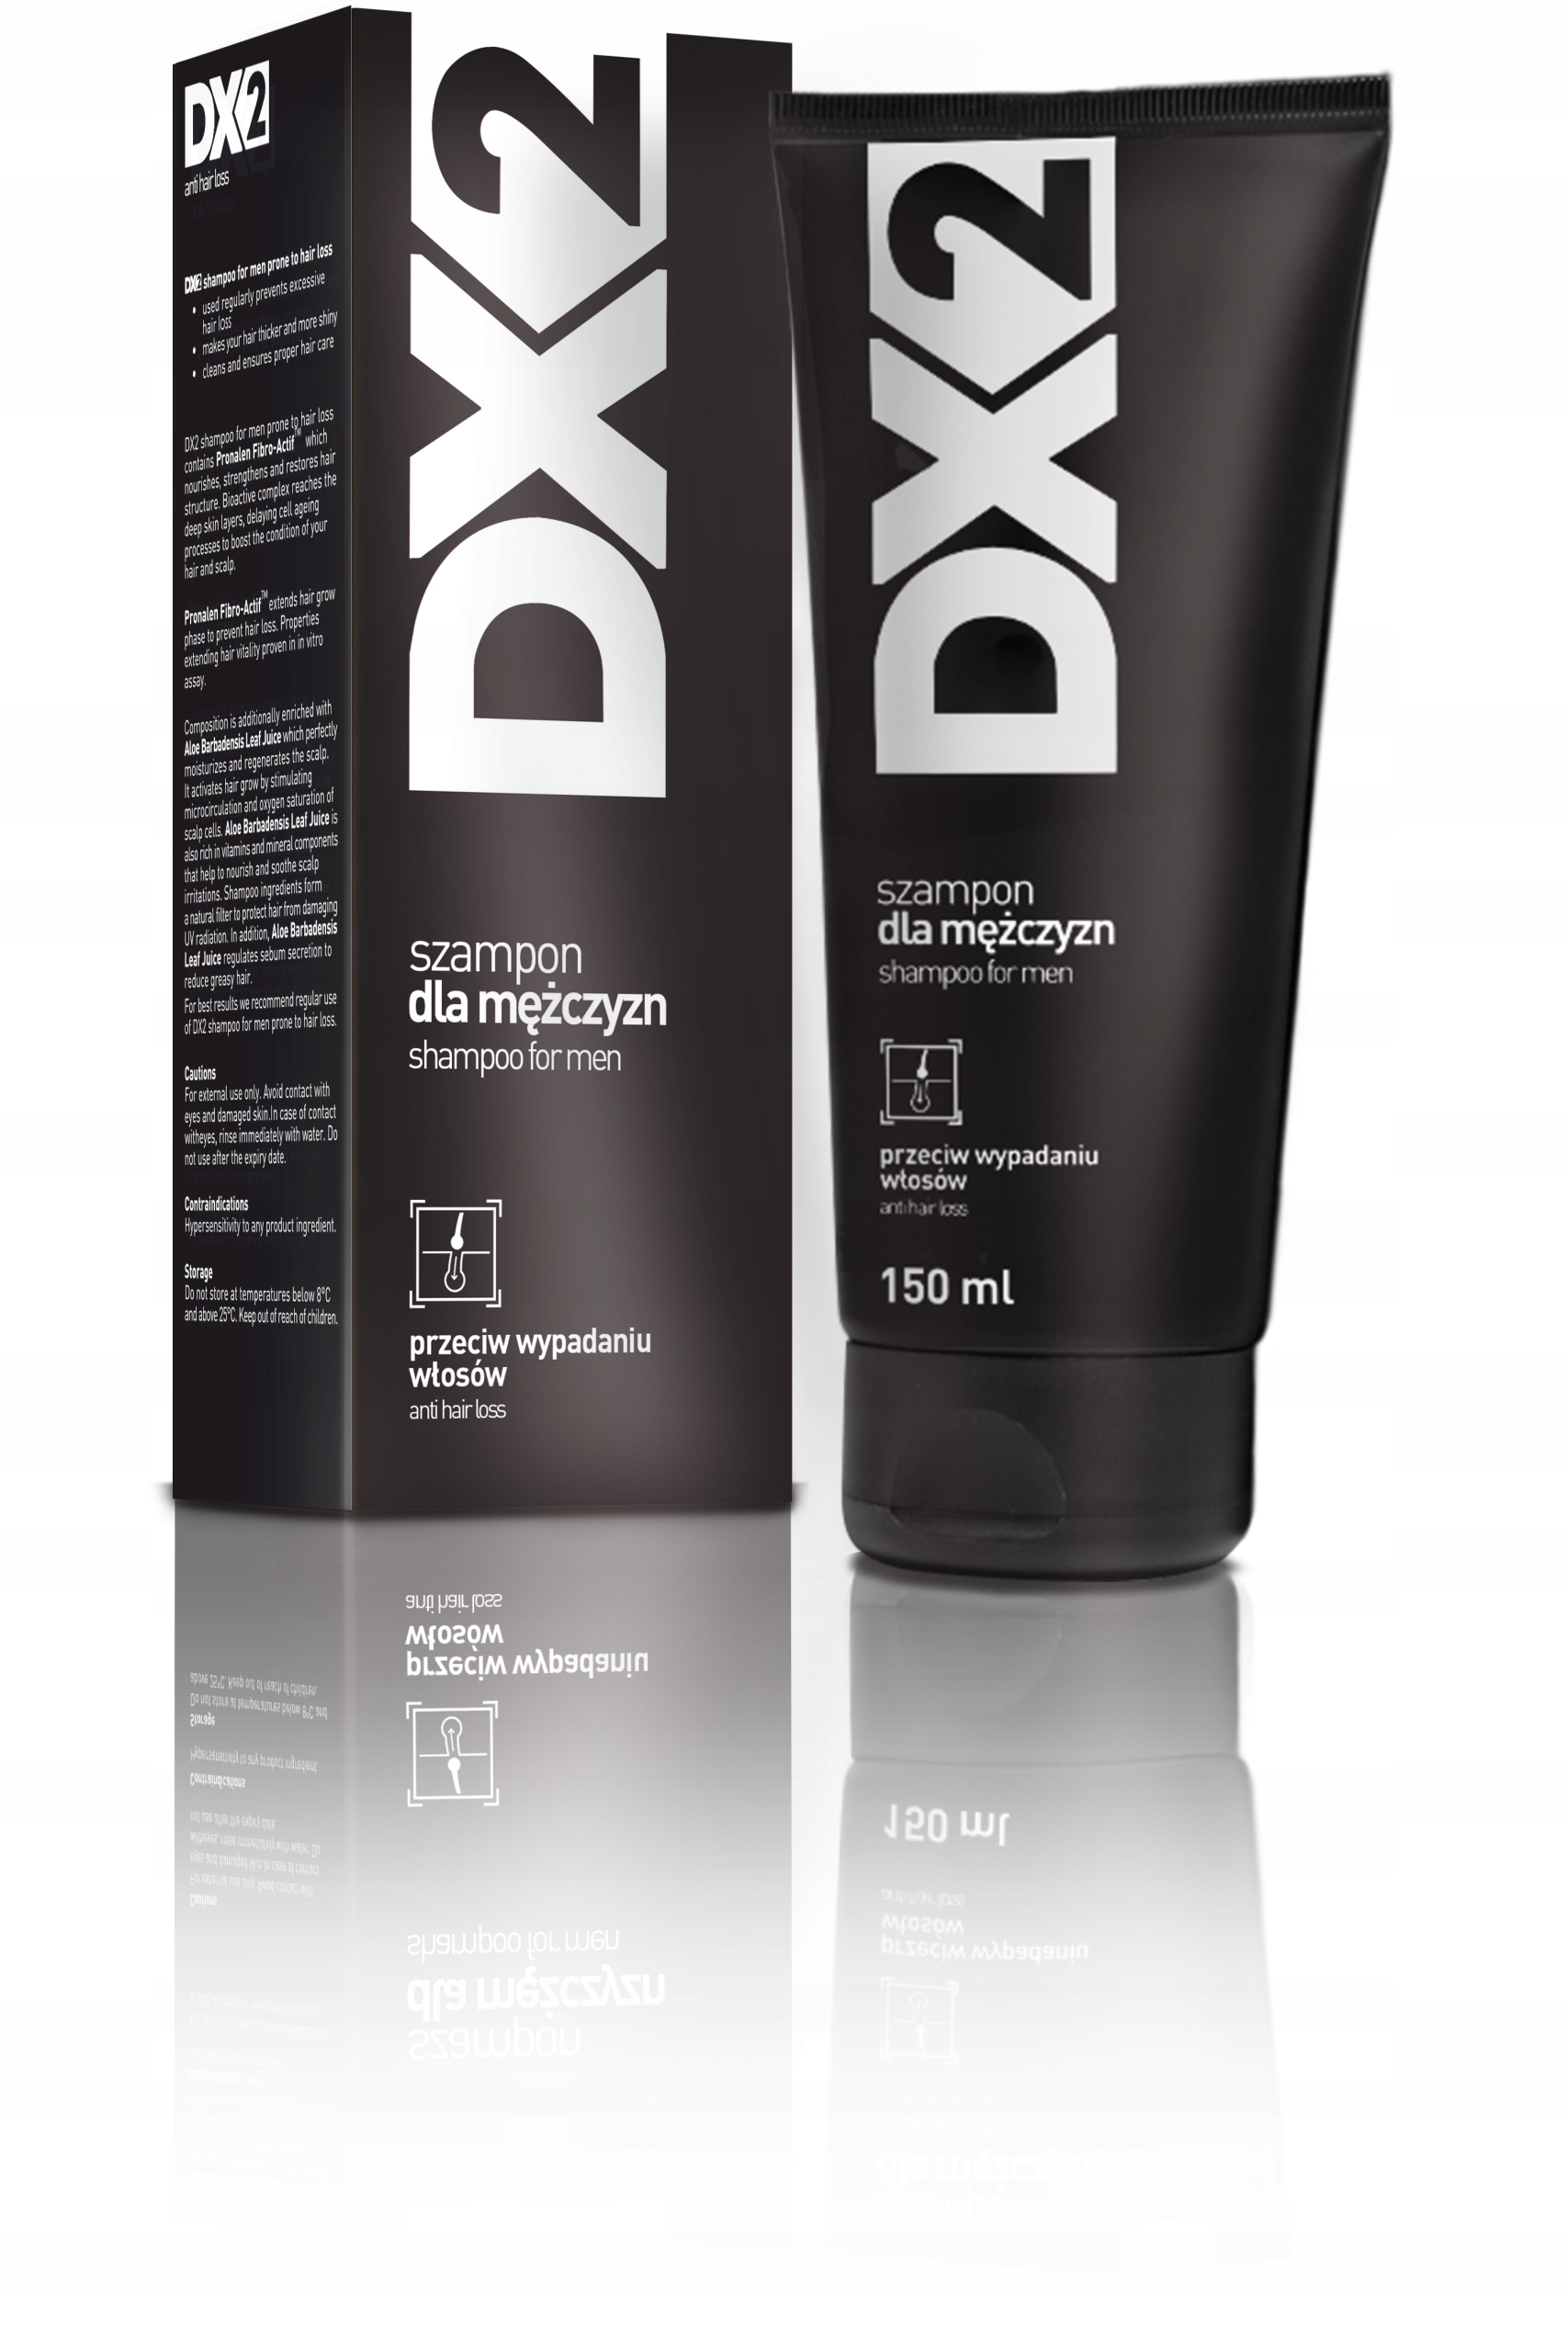 szampon dx2 czarny czy nadaje sie dla kobiet